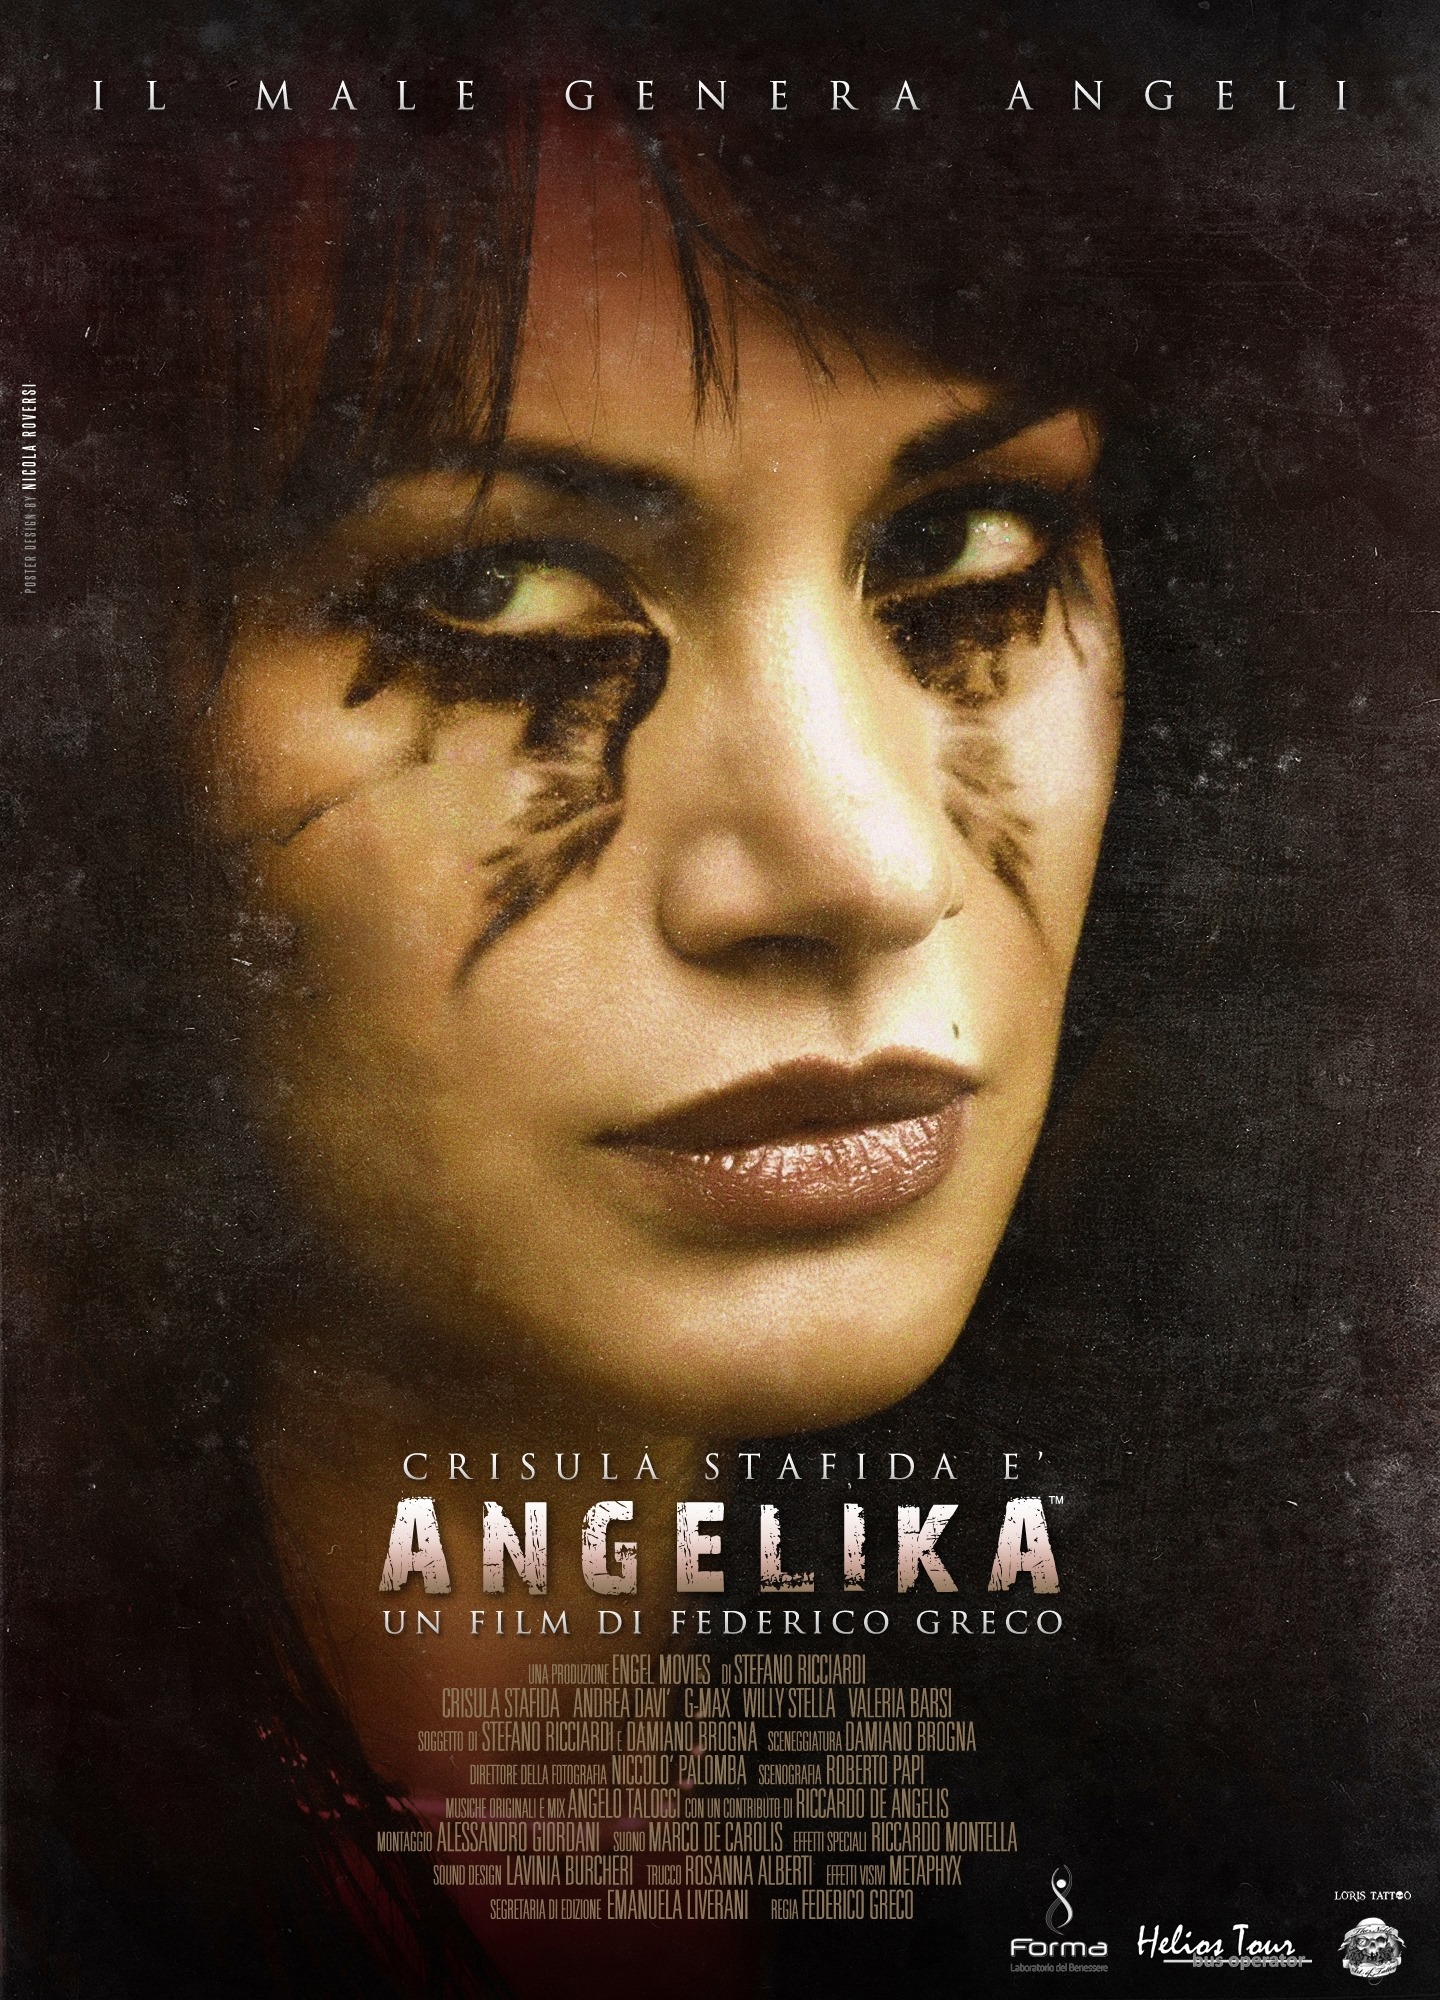 Dal 1° gennaio 2015 “Angelika”, il thriller revenge-movie di 21 minuti diretto da Federico Greco e interpretato dalla bella e brava Crisula Stafida, è visibile on-line dalle pagine del TOFF […]